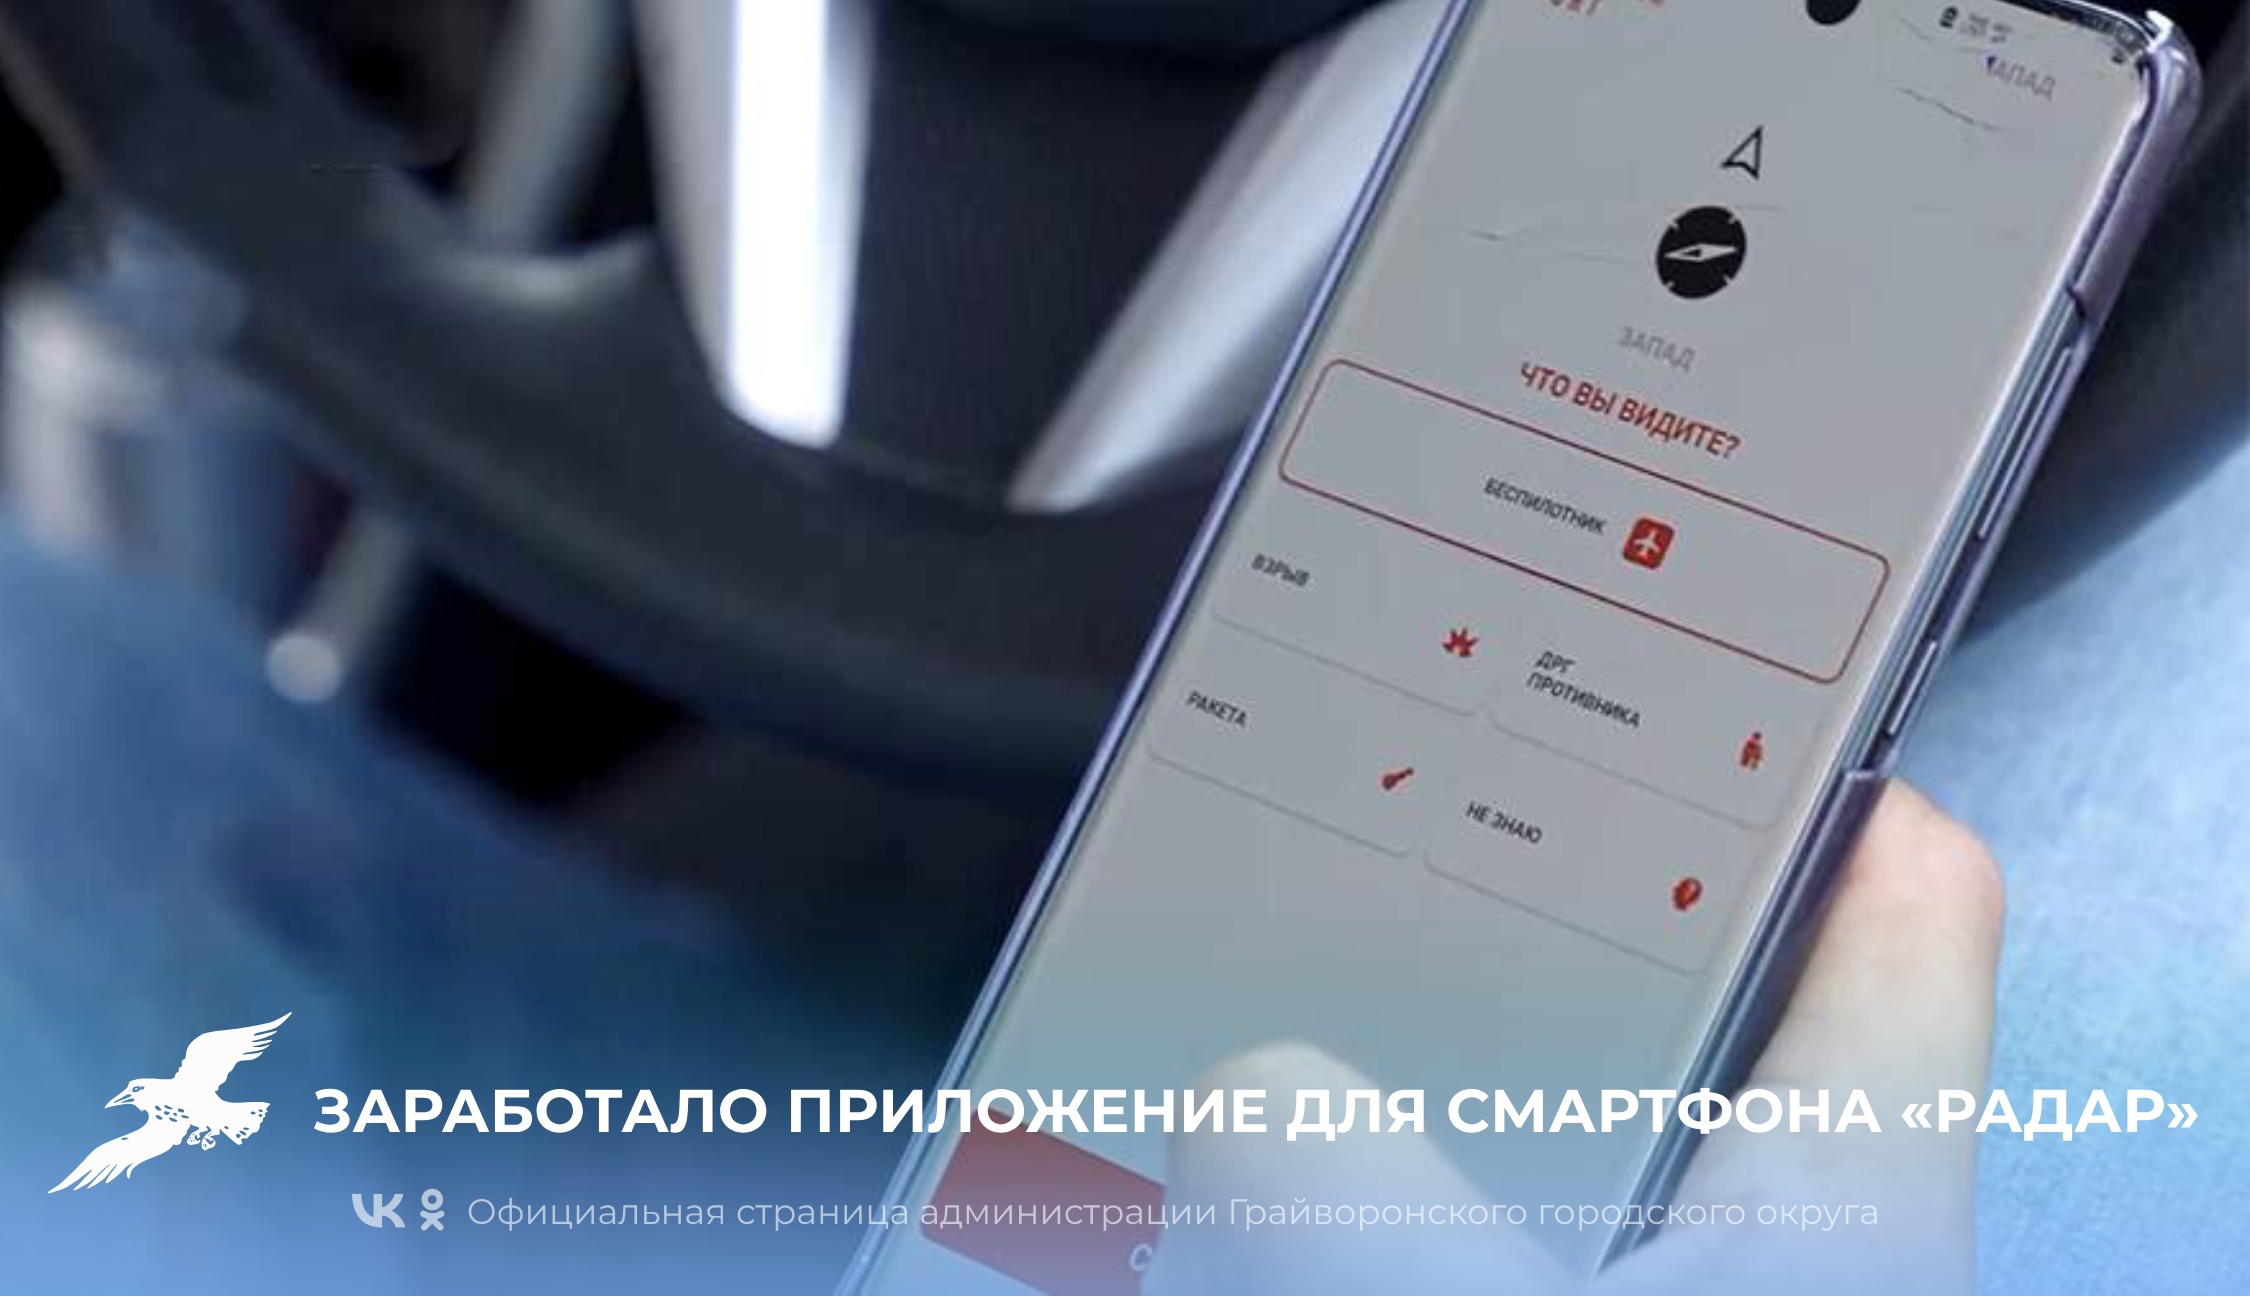 Губернатор Вячеслав Гладков рассказал о приложении для смартфона «Радар» для передачи информации о происшествии и БПЛА.